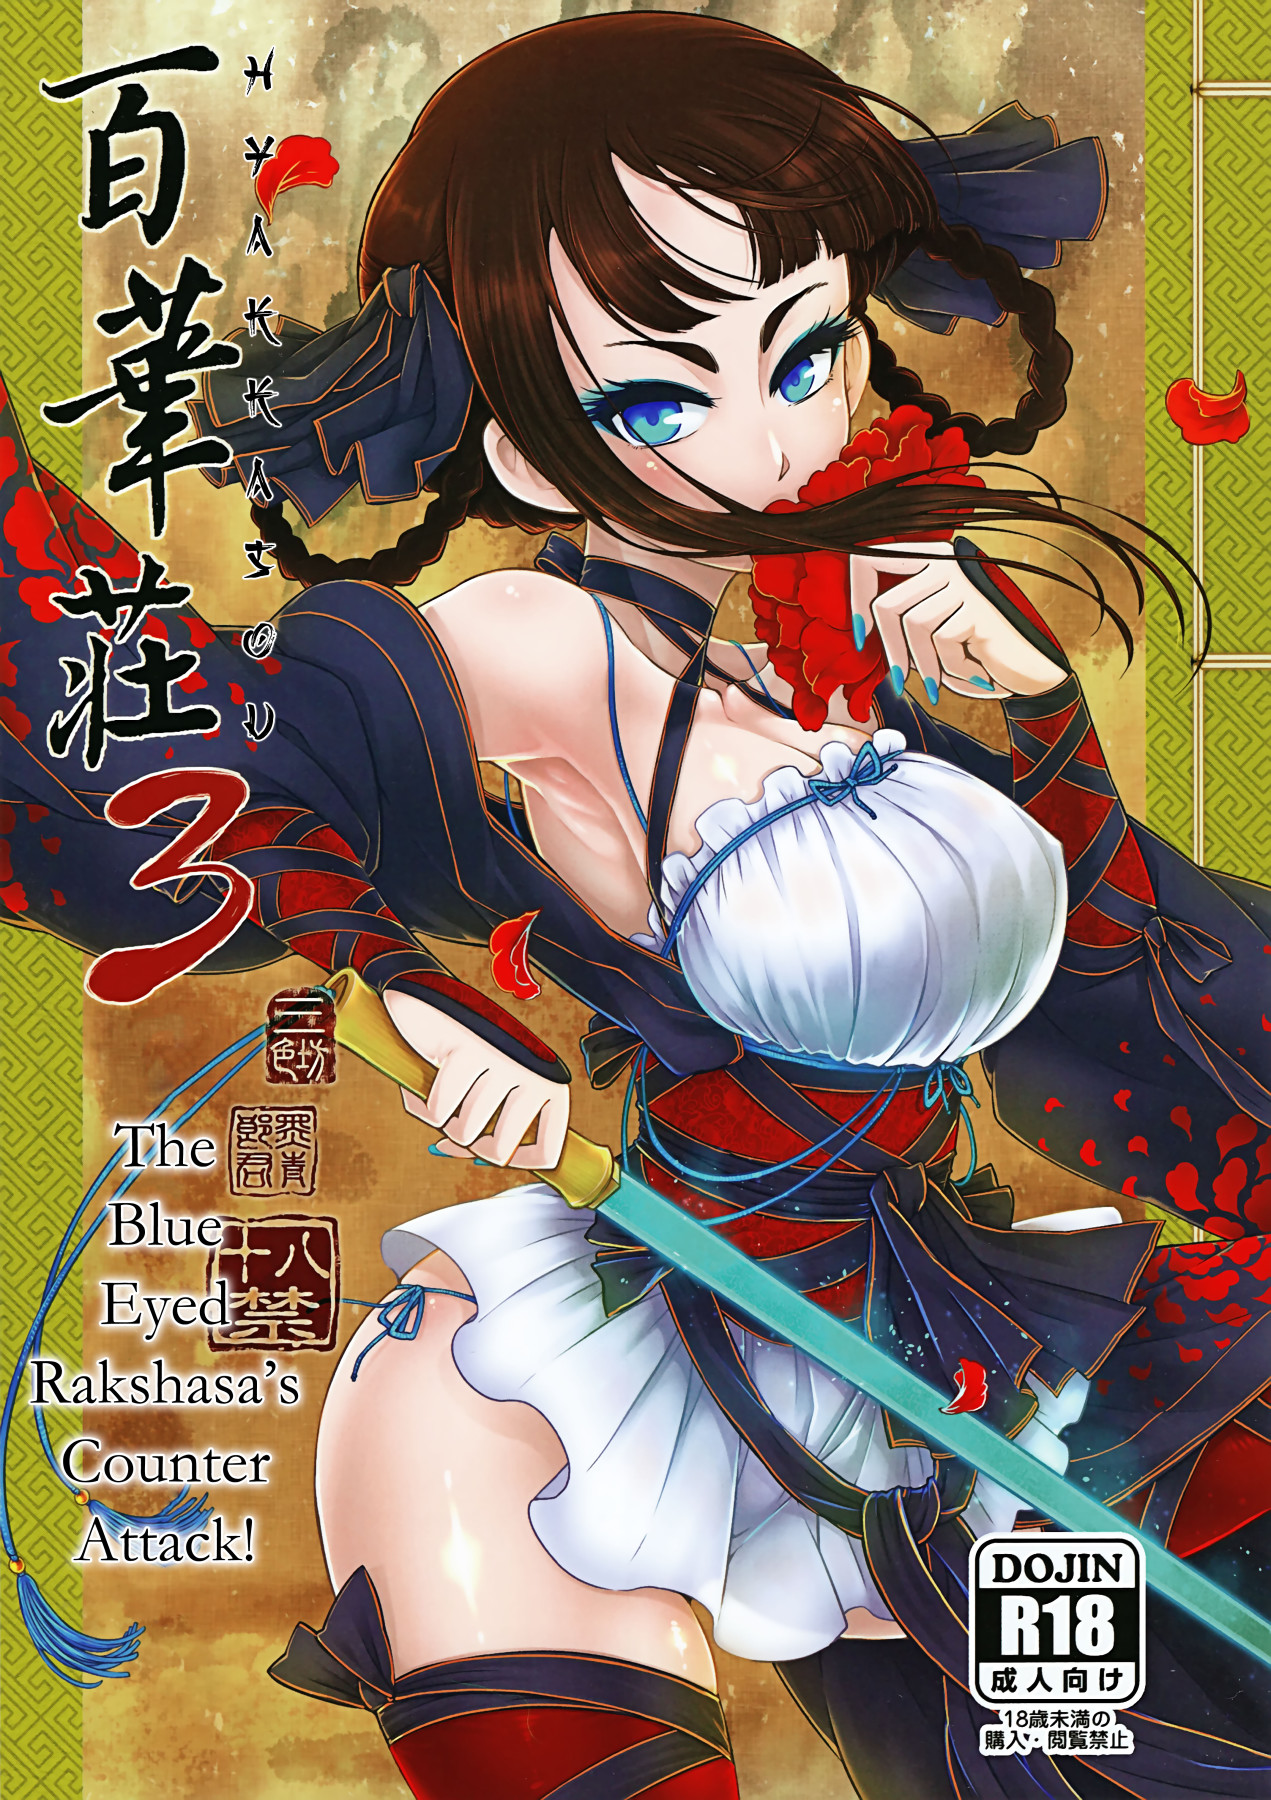 Hentai Manga Comic-Hyakkasou3 <<The Blue Eyed Rakshasa's Counter Attack!>>-Read-1